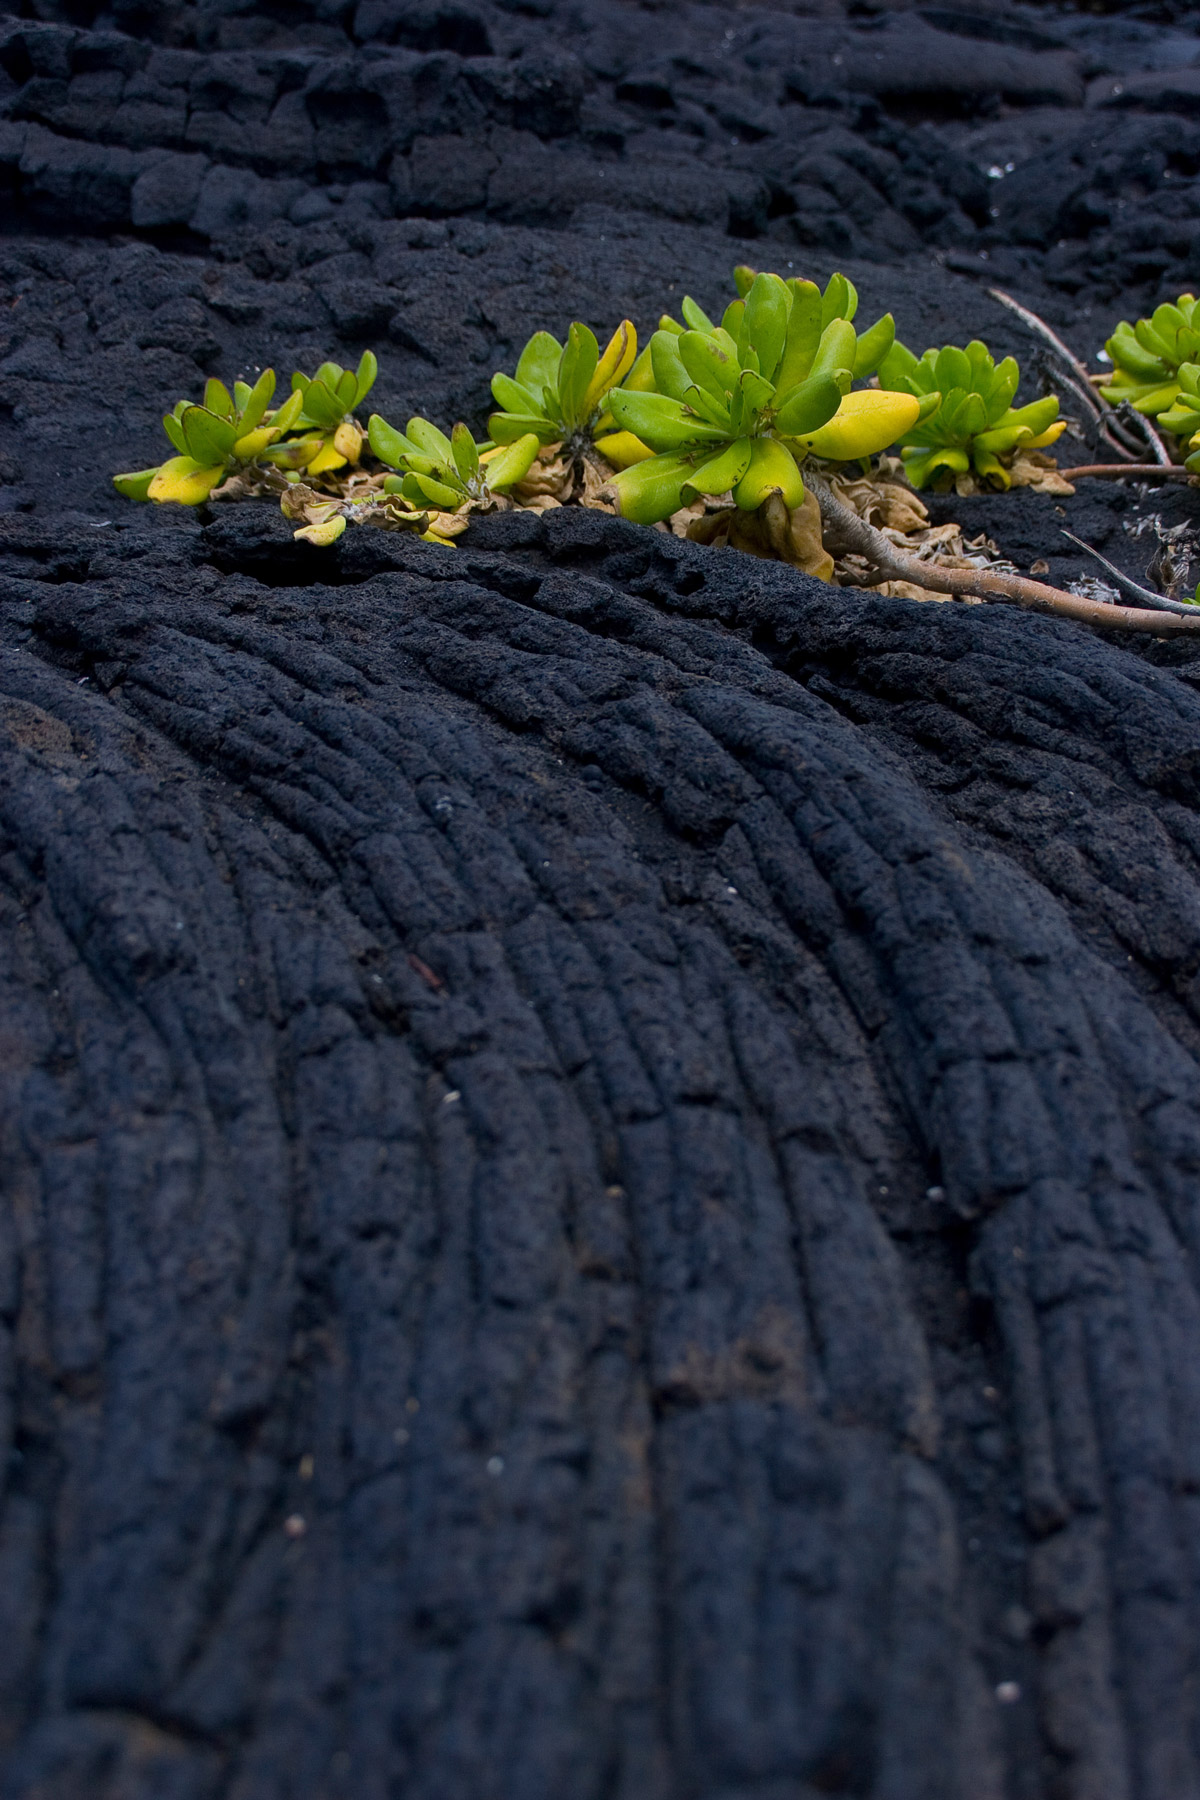 Plants growing in lava rock.